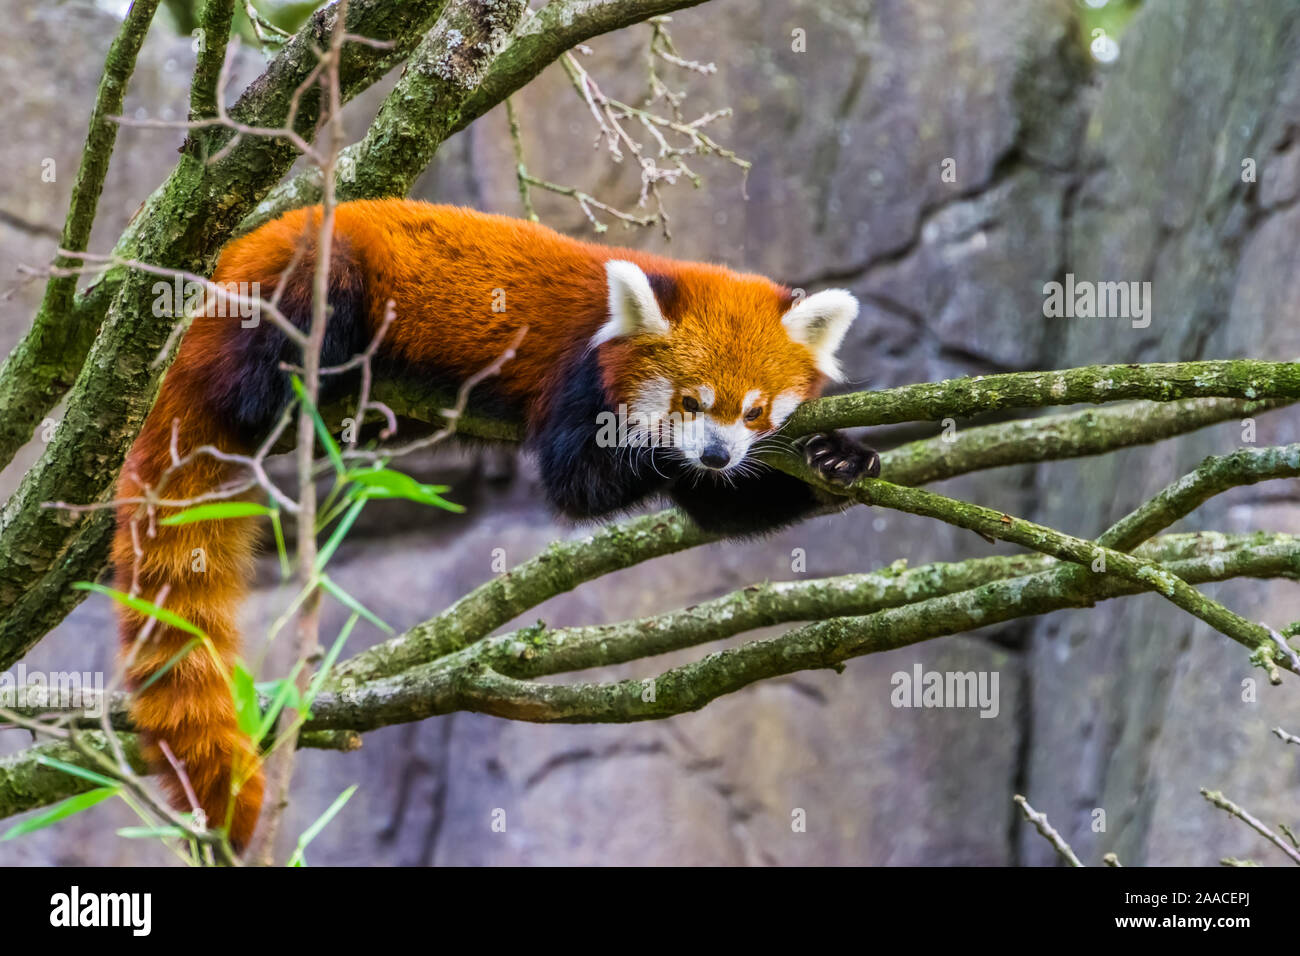 Closeup ritratto di un panda rosso recante su di un ramo di albero, adorabile piccolo panda, vulnerabile specie animale da Asia Foto Stock